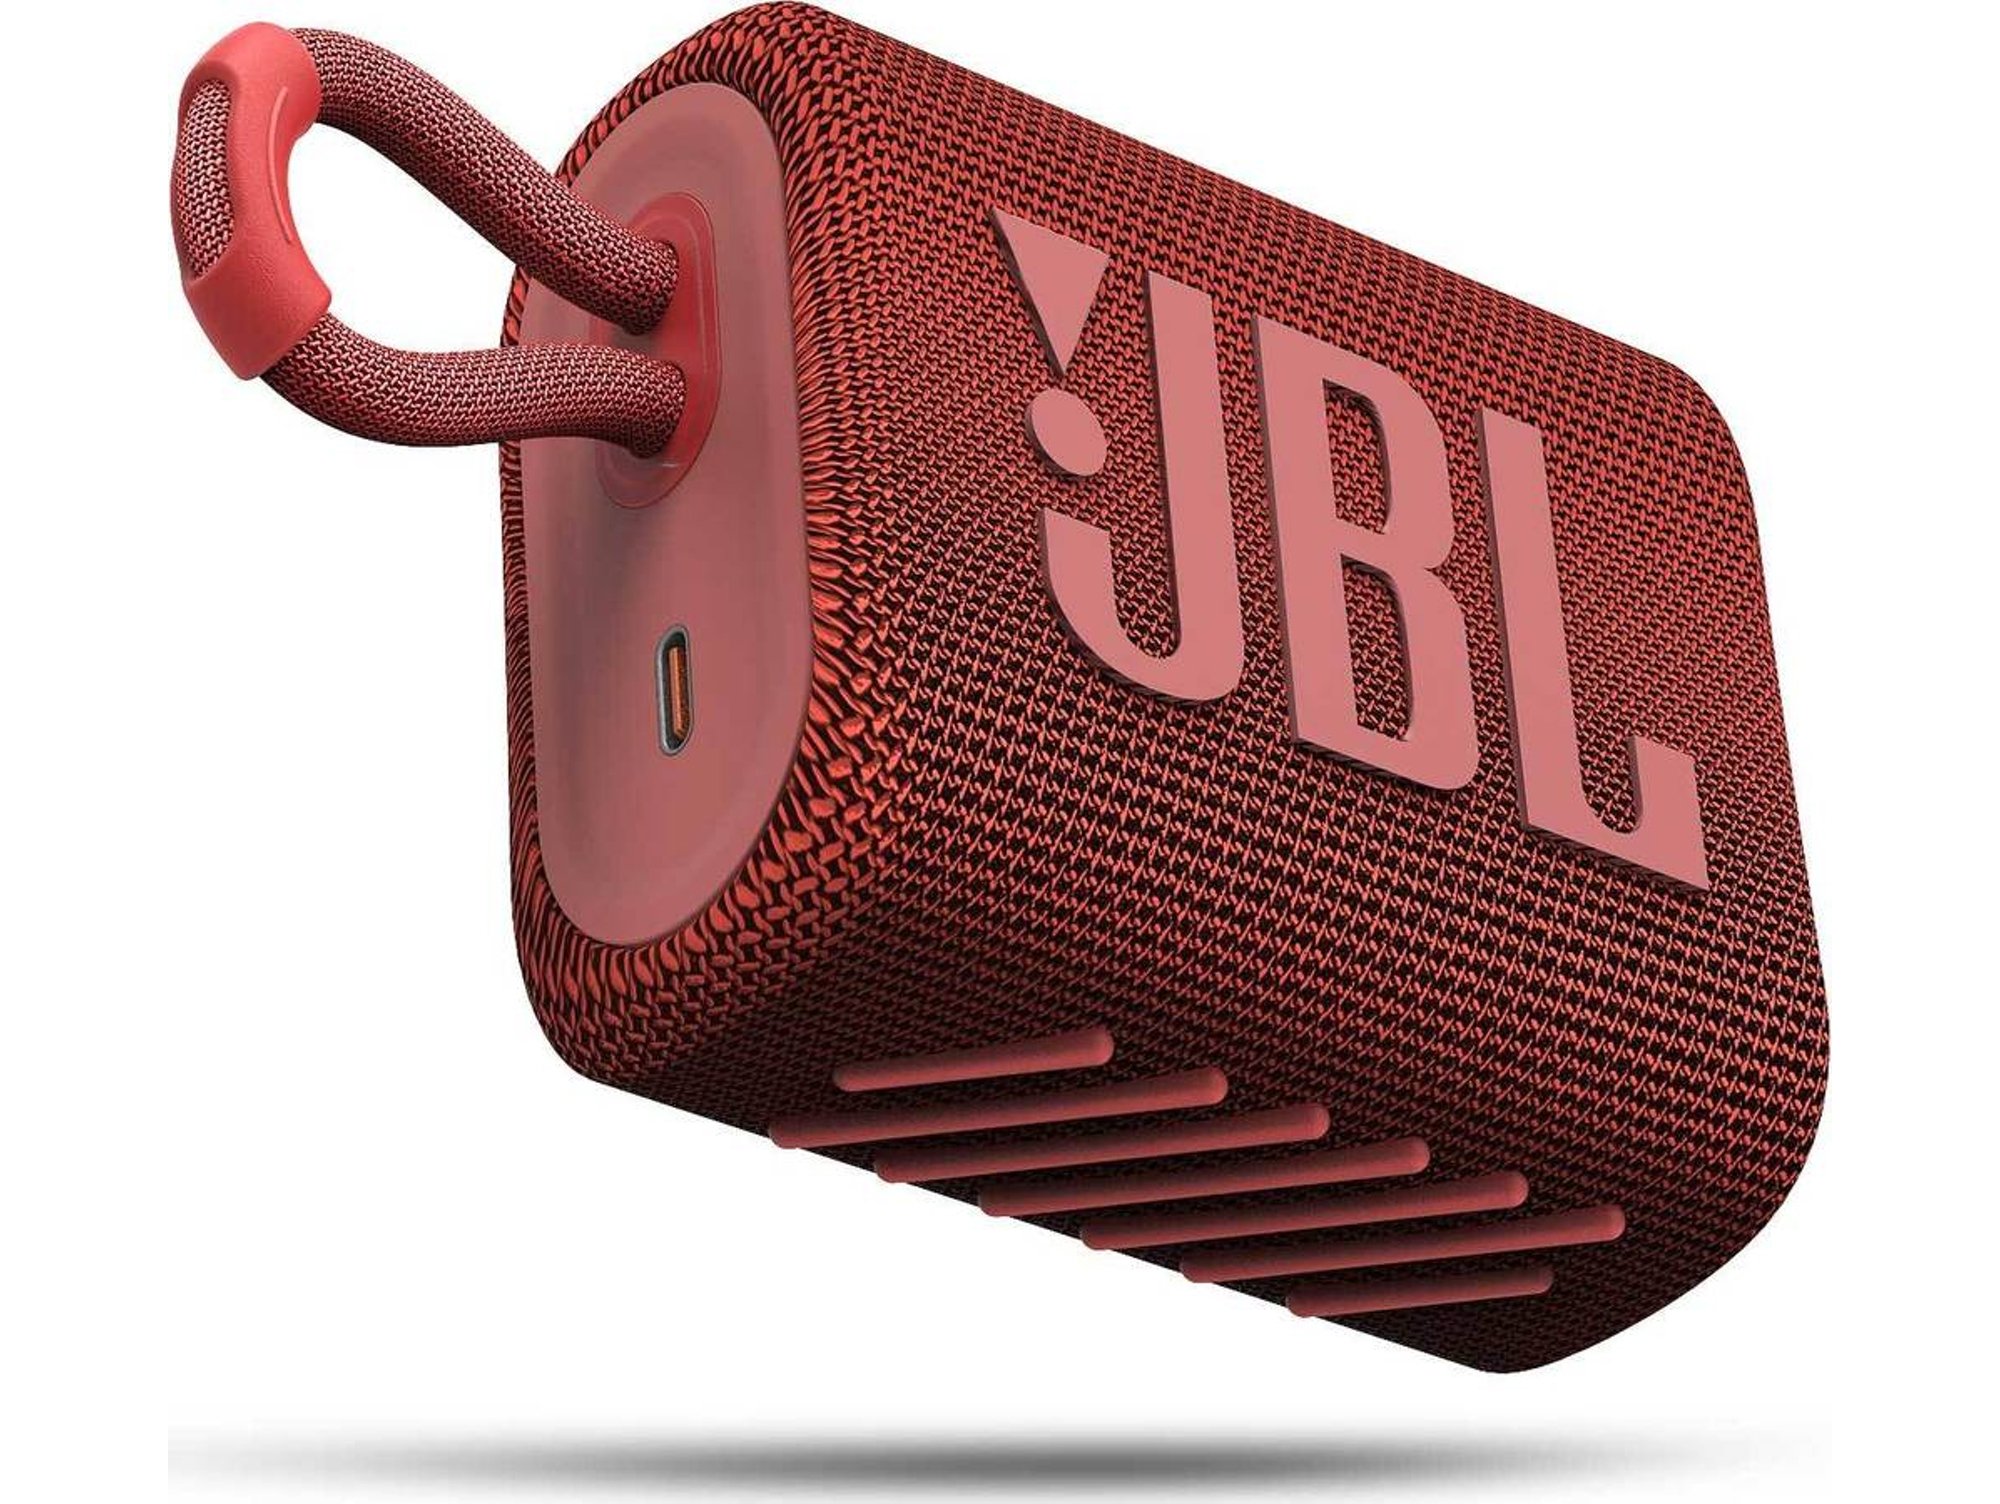 Jbl Go 3 altavoz con bluetooth resistente agua y polvo ip67 hasta 5h de sonido fidelidad rojo 4.2 w 5 500 5.1